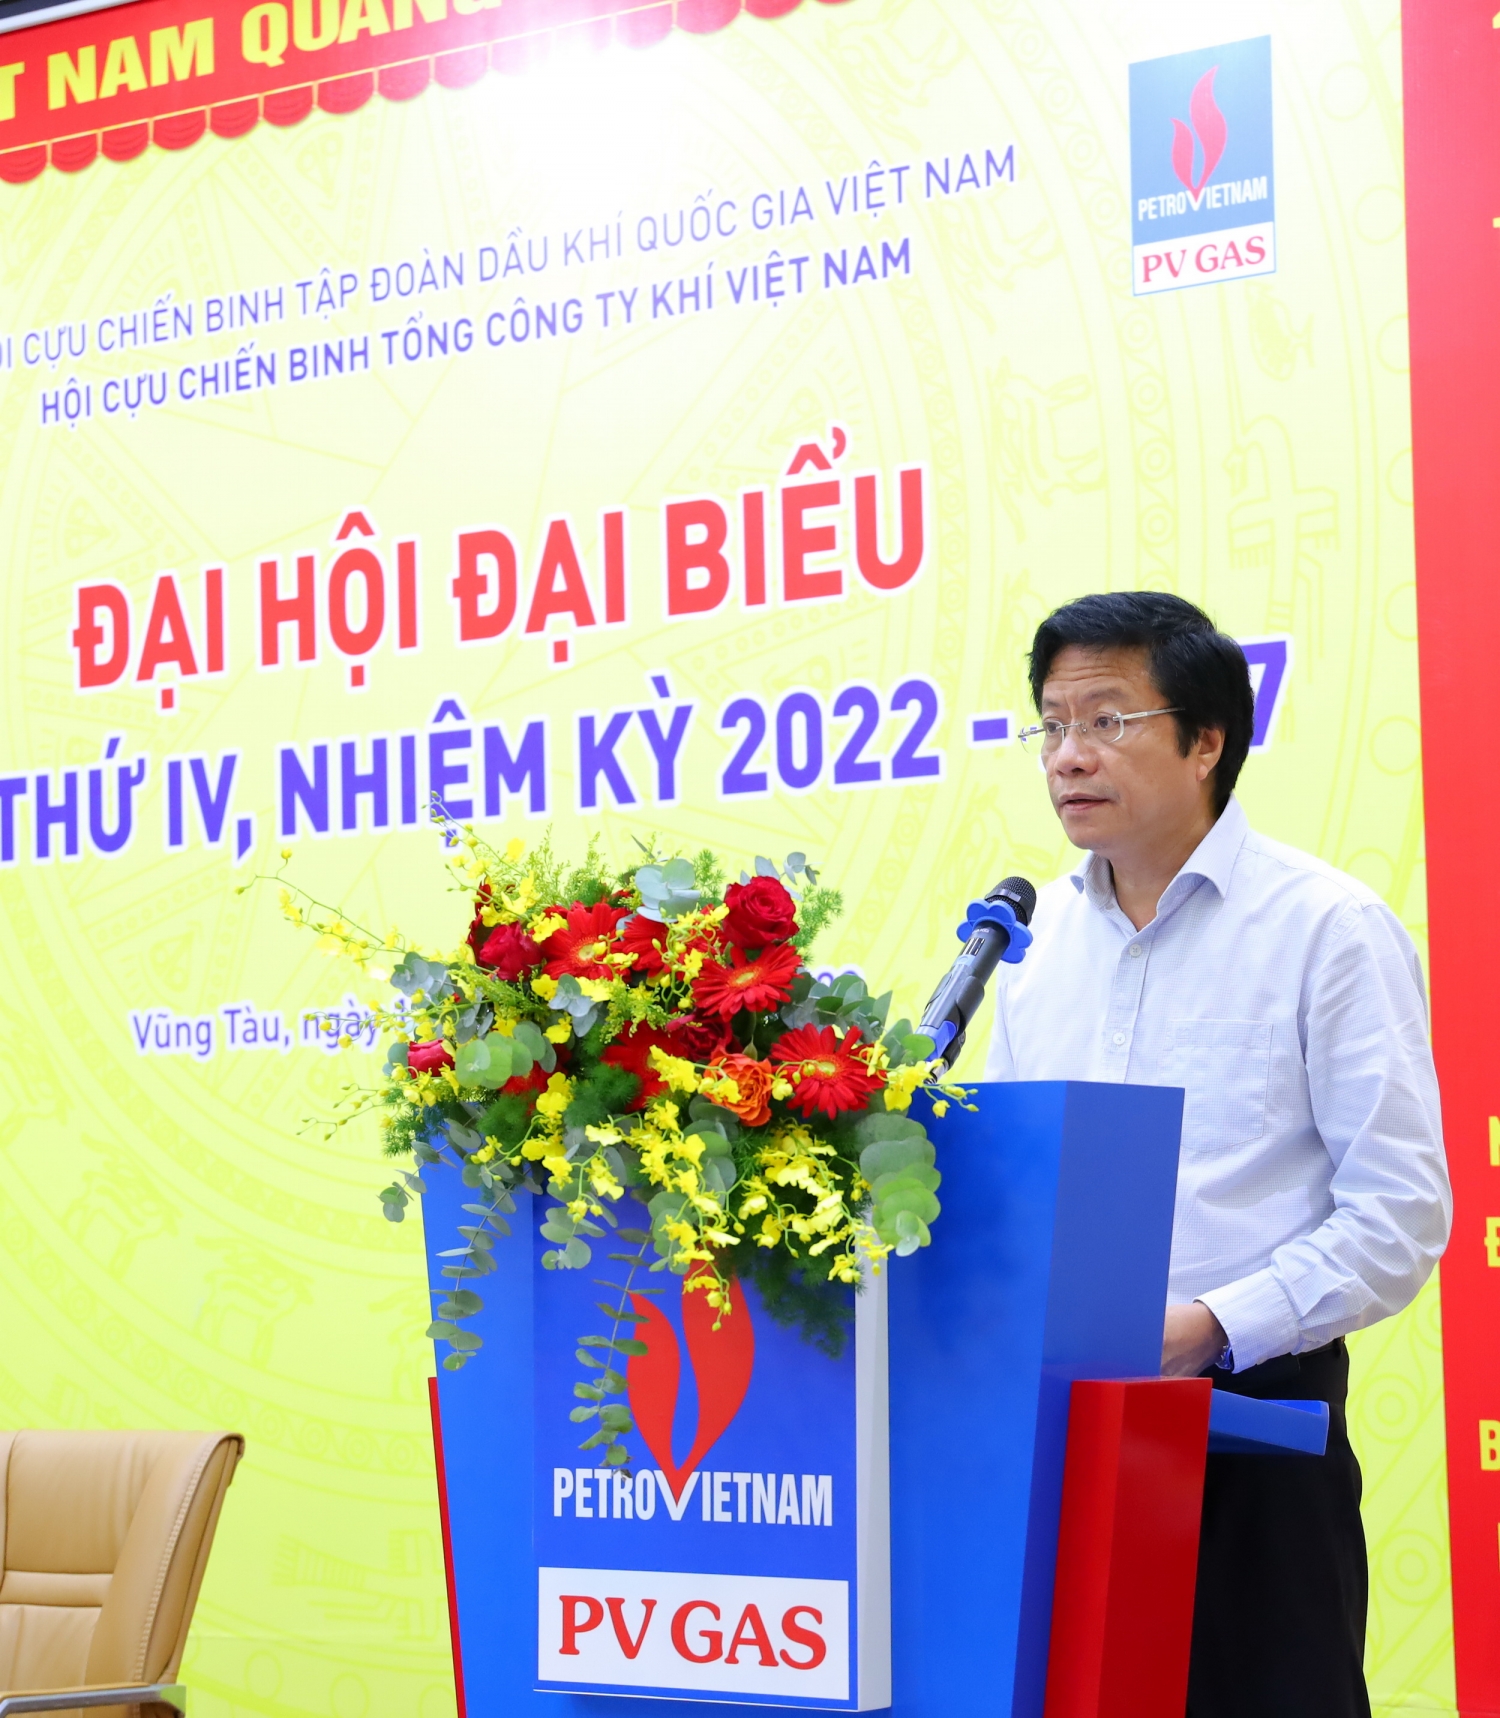 Đồng chí Trần Đức Sơn - Ủy viên Ban thường vụ - Phó Bí thư Đảng ủy phát biểu chỉ đạo Đại hội